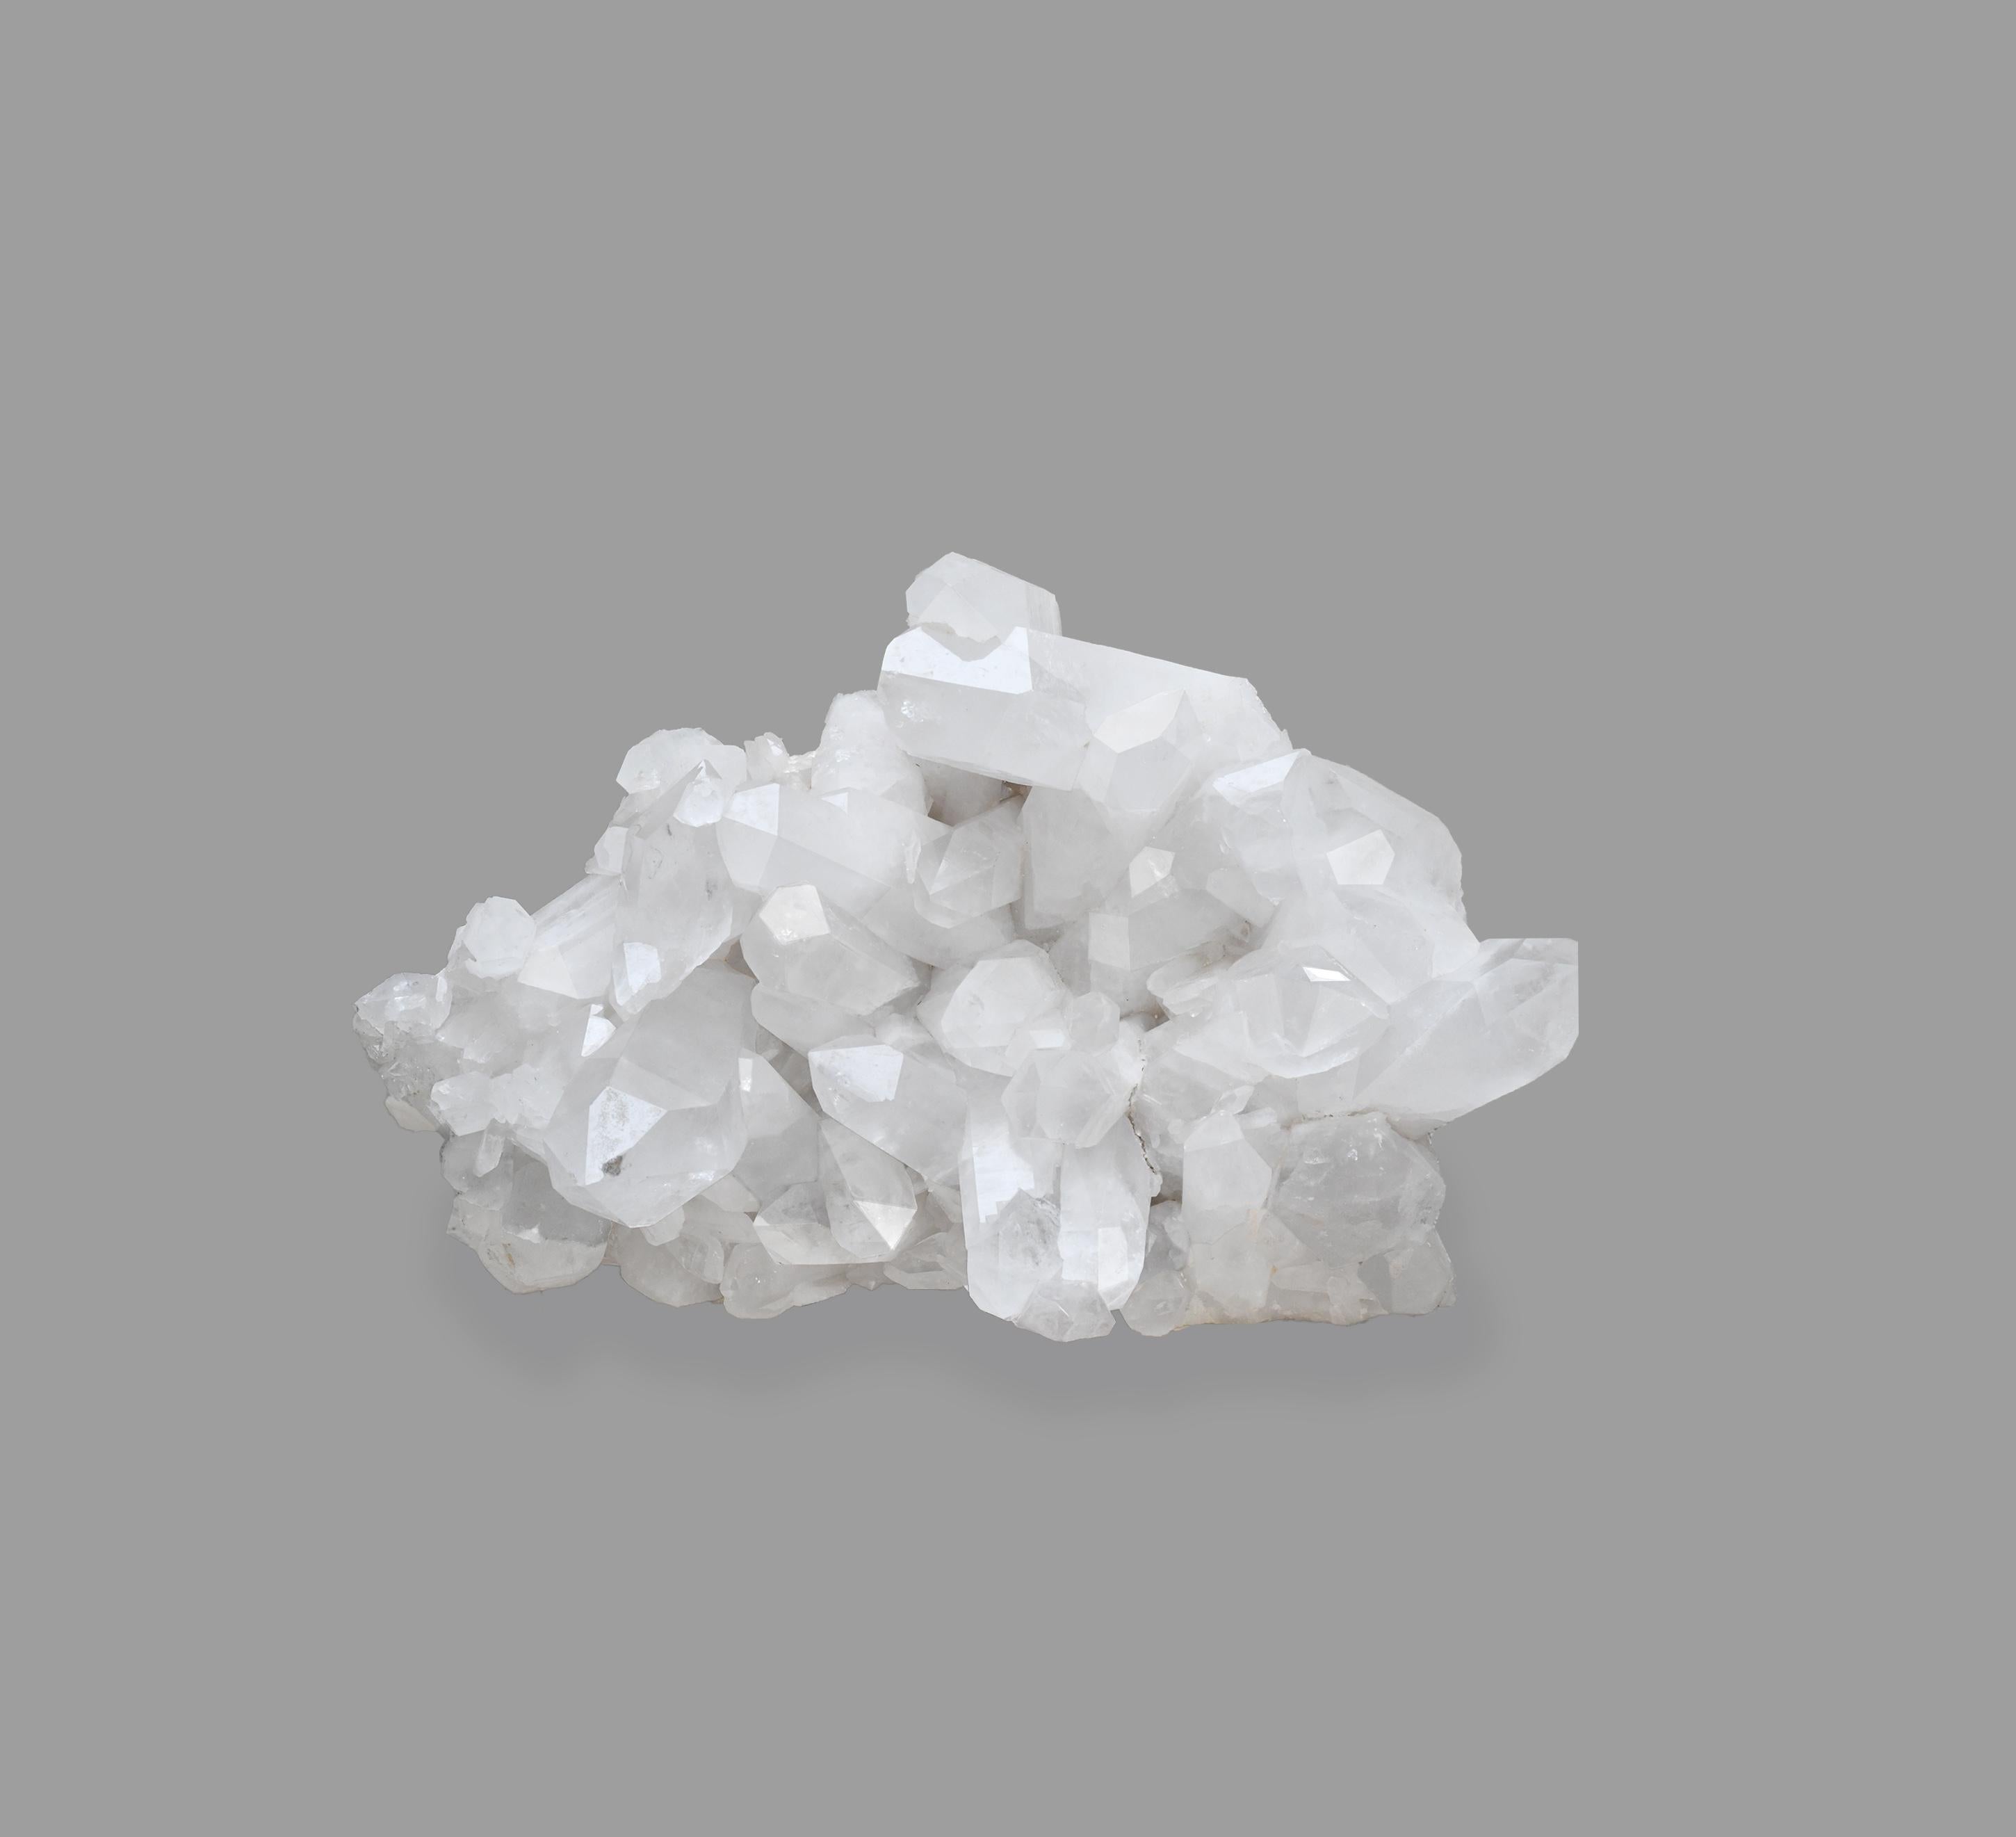 Rare Large Natural Rock Crystal Quartz Cluster For Sale 1